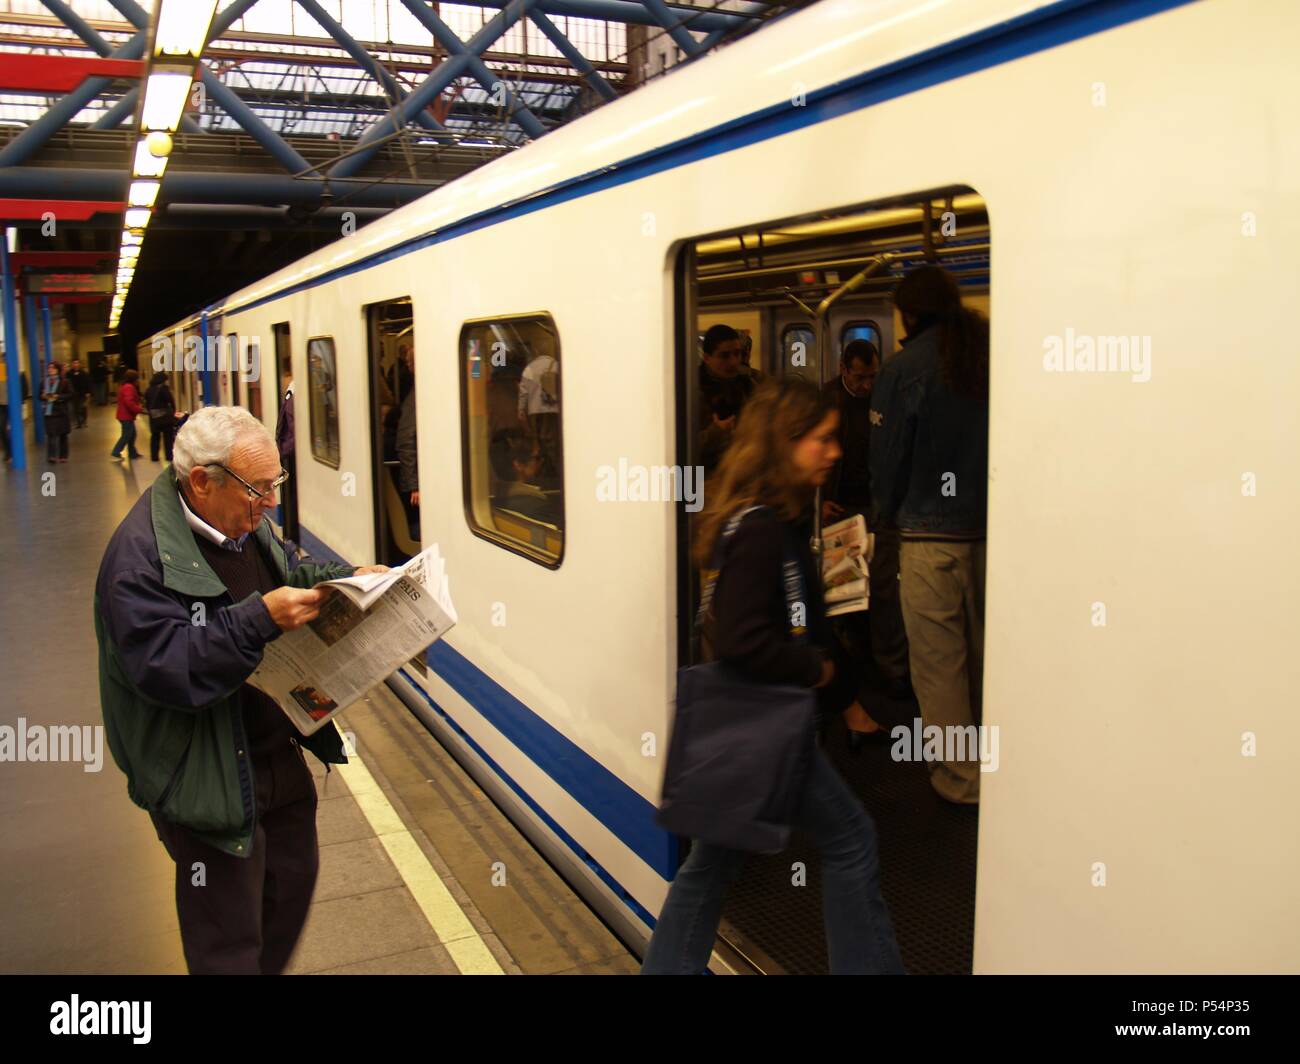 ESTACION DE METRO. Pasajeros subiendo a un vagón. Madrid. España. Stock Photo